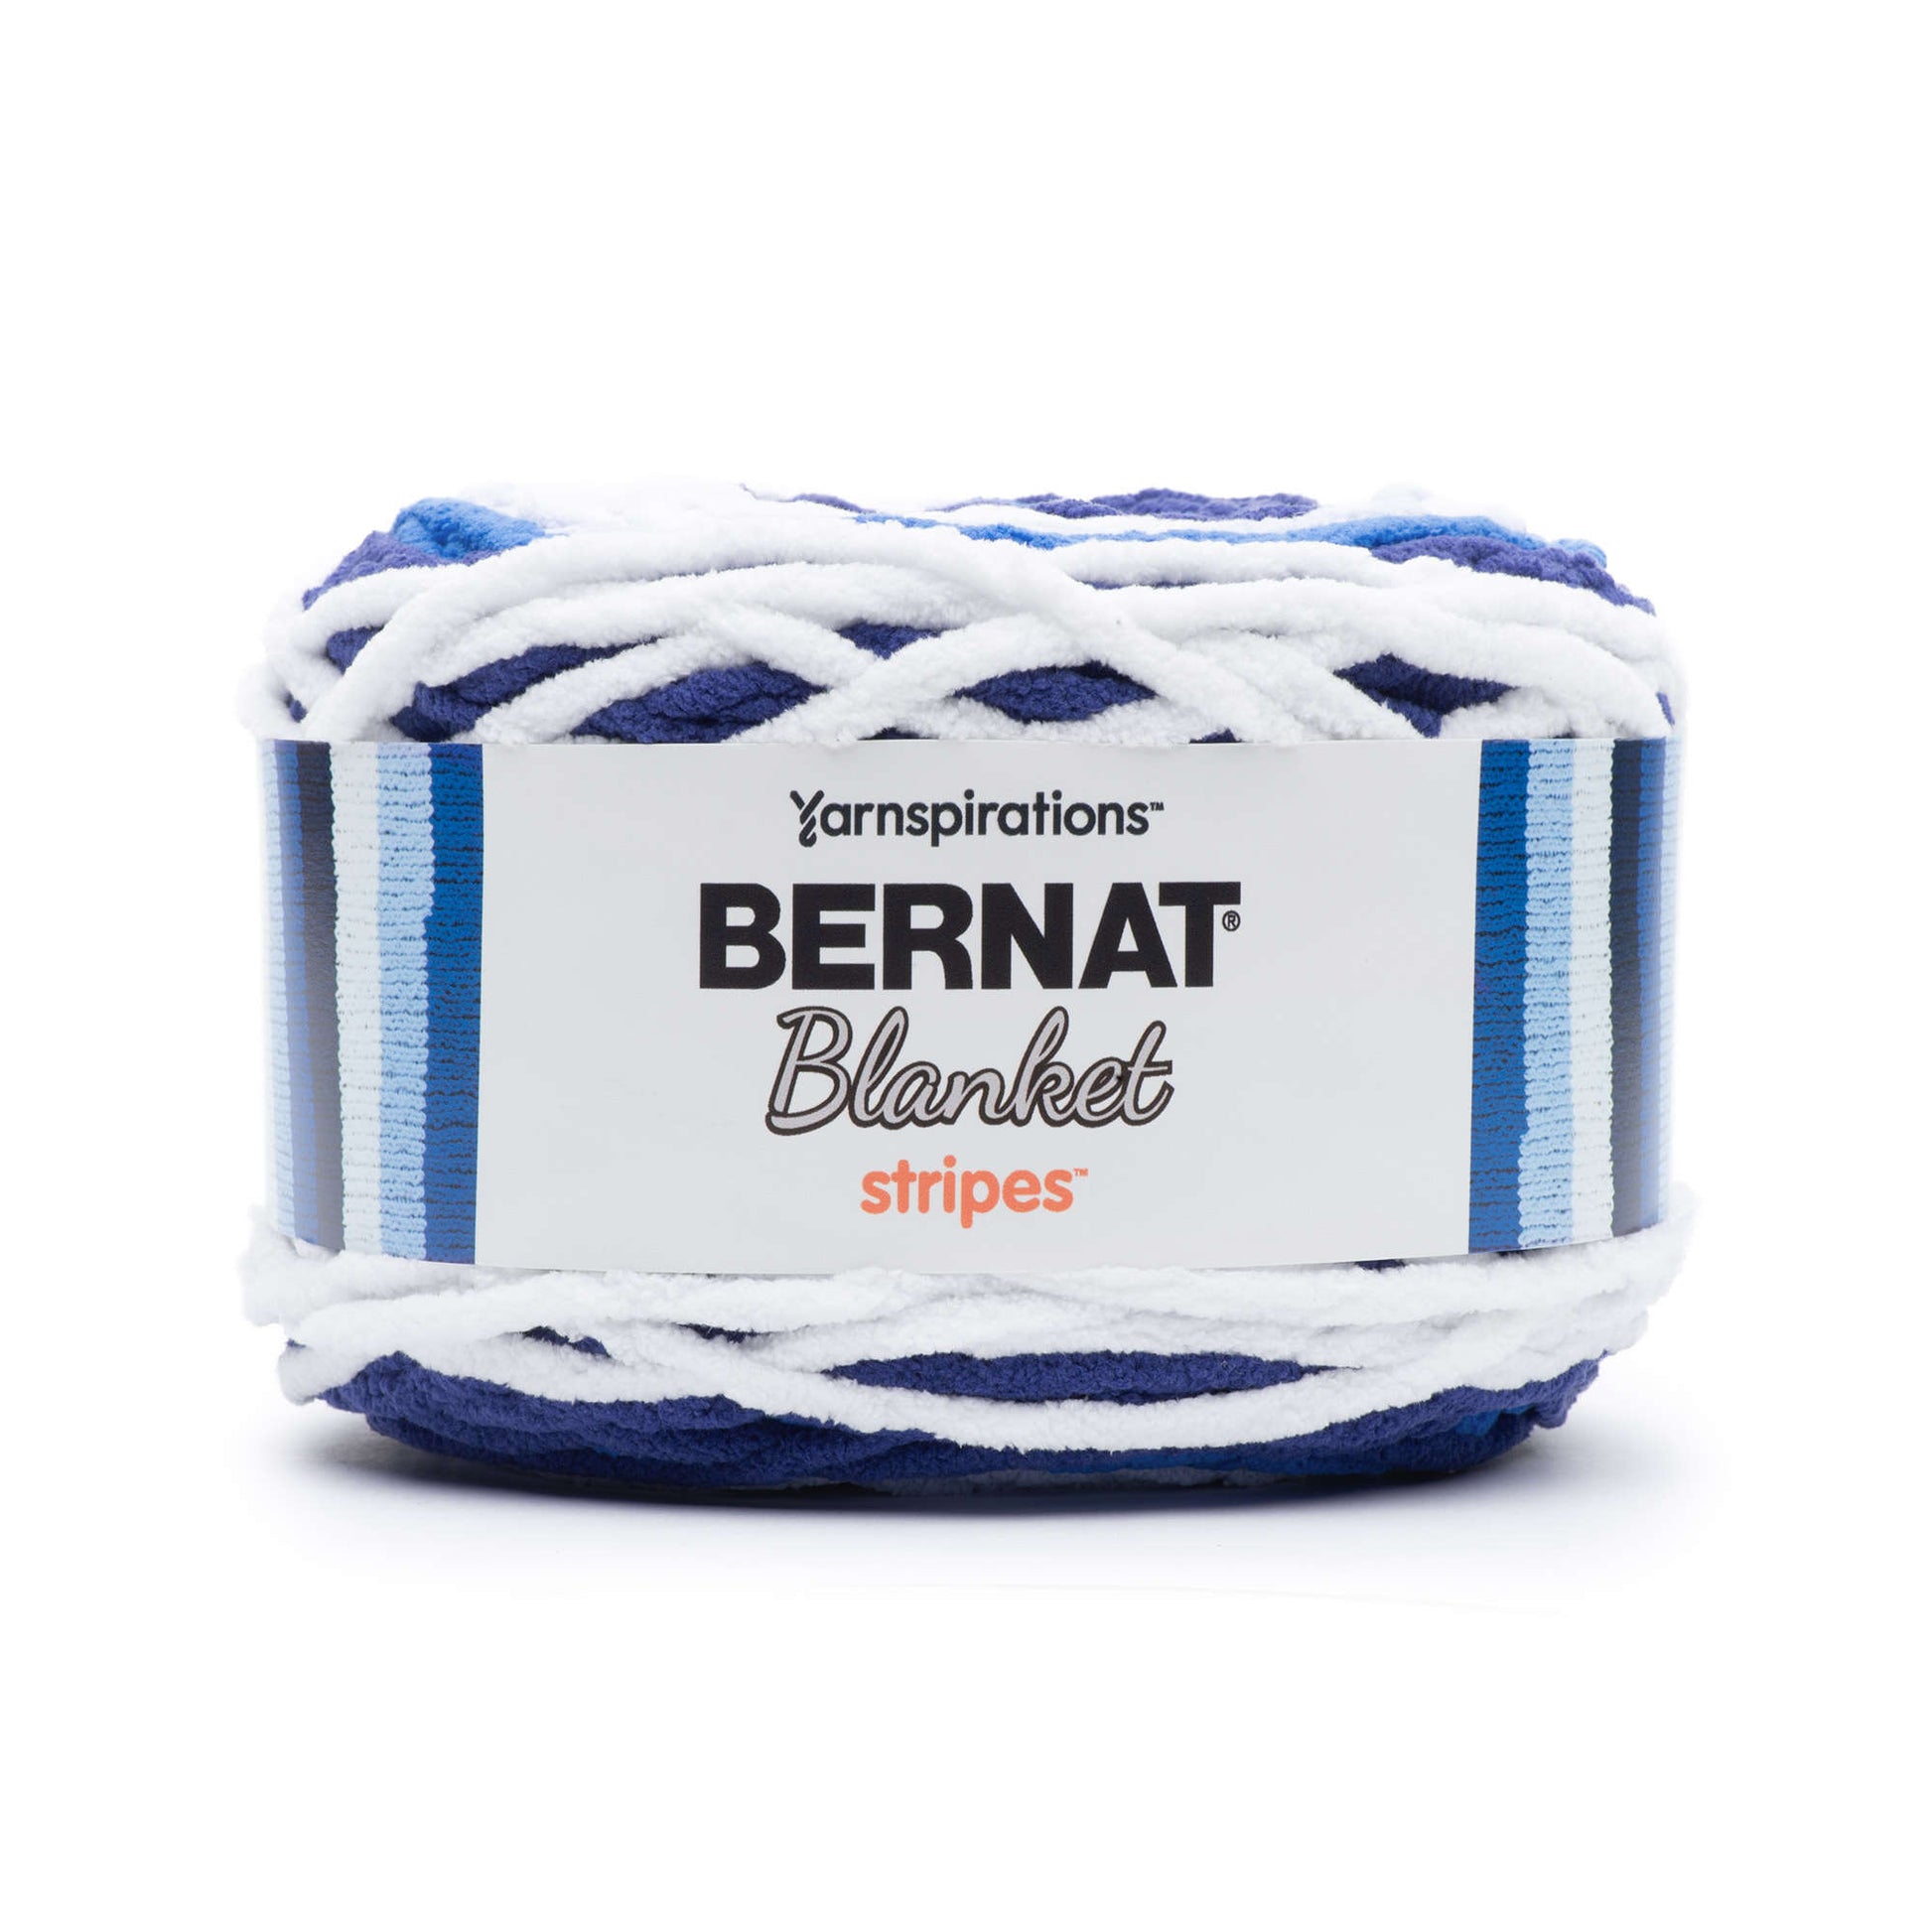 Bernat Blanket Stripes Yarn (300g/10.5oz) - Discontinued Shades Clear Sky